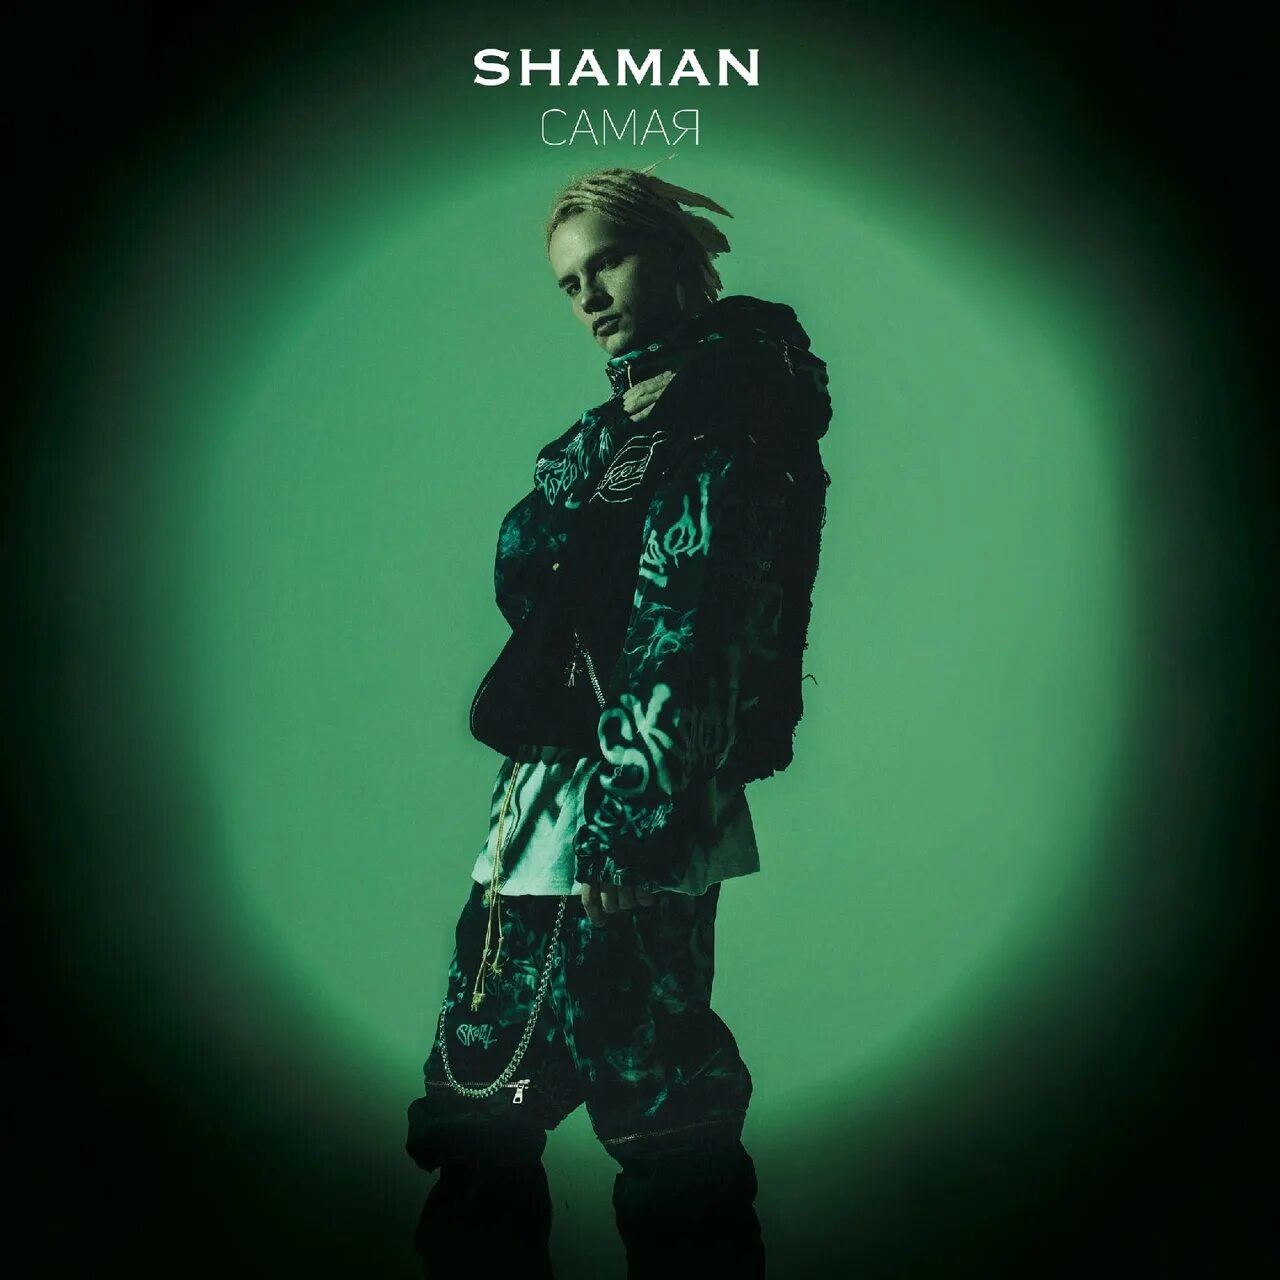 Shaman (певец). Shaman певец обложка. Самая Shaman. Shaman в молодости. Слушать песни шамана там где